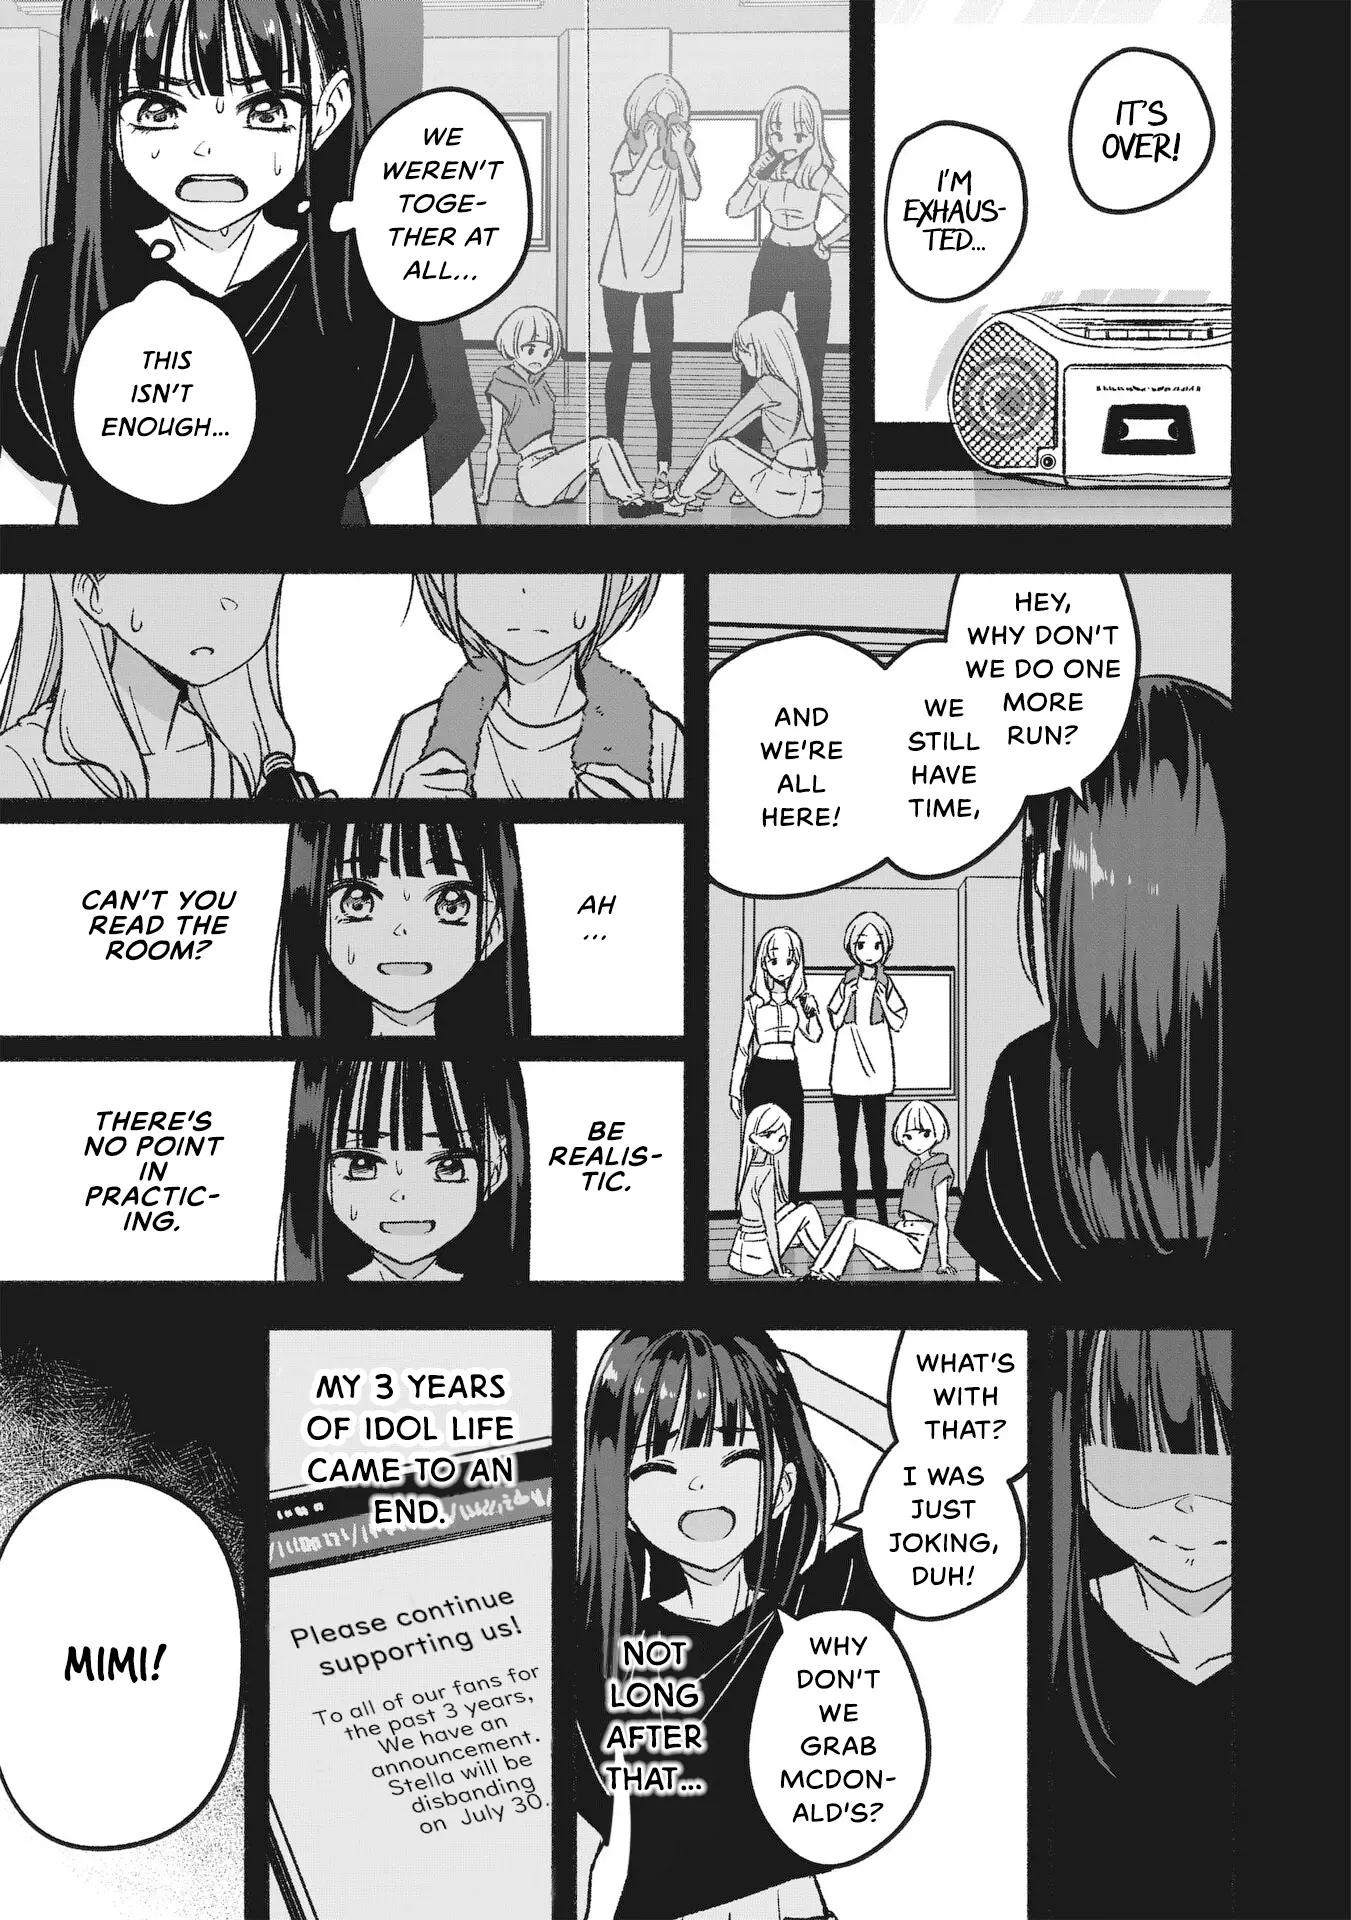 Idol×Idol Story! - 1 page 19-84138f91